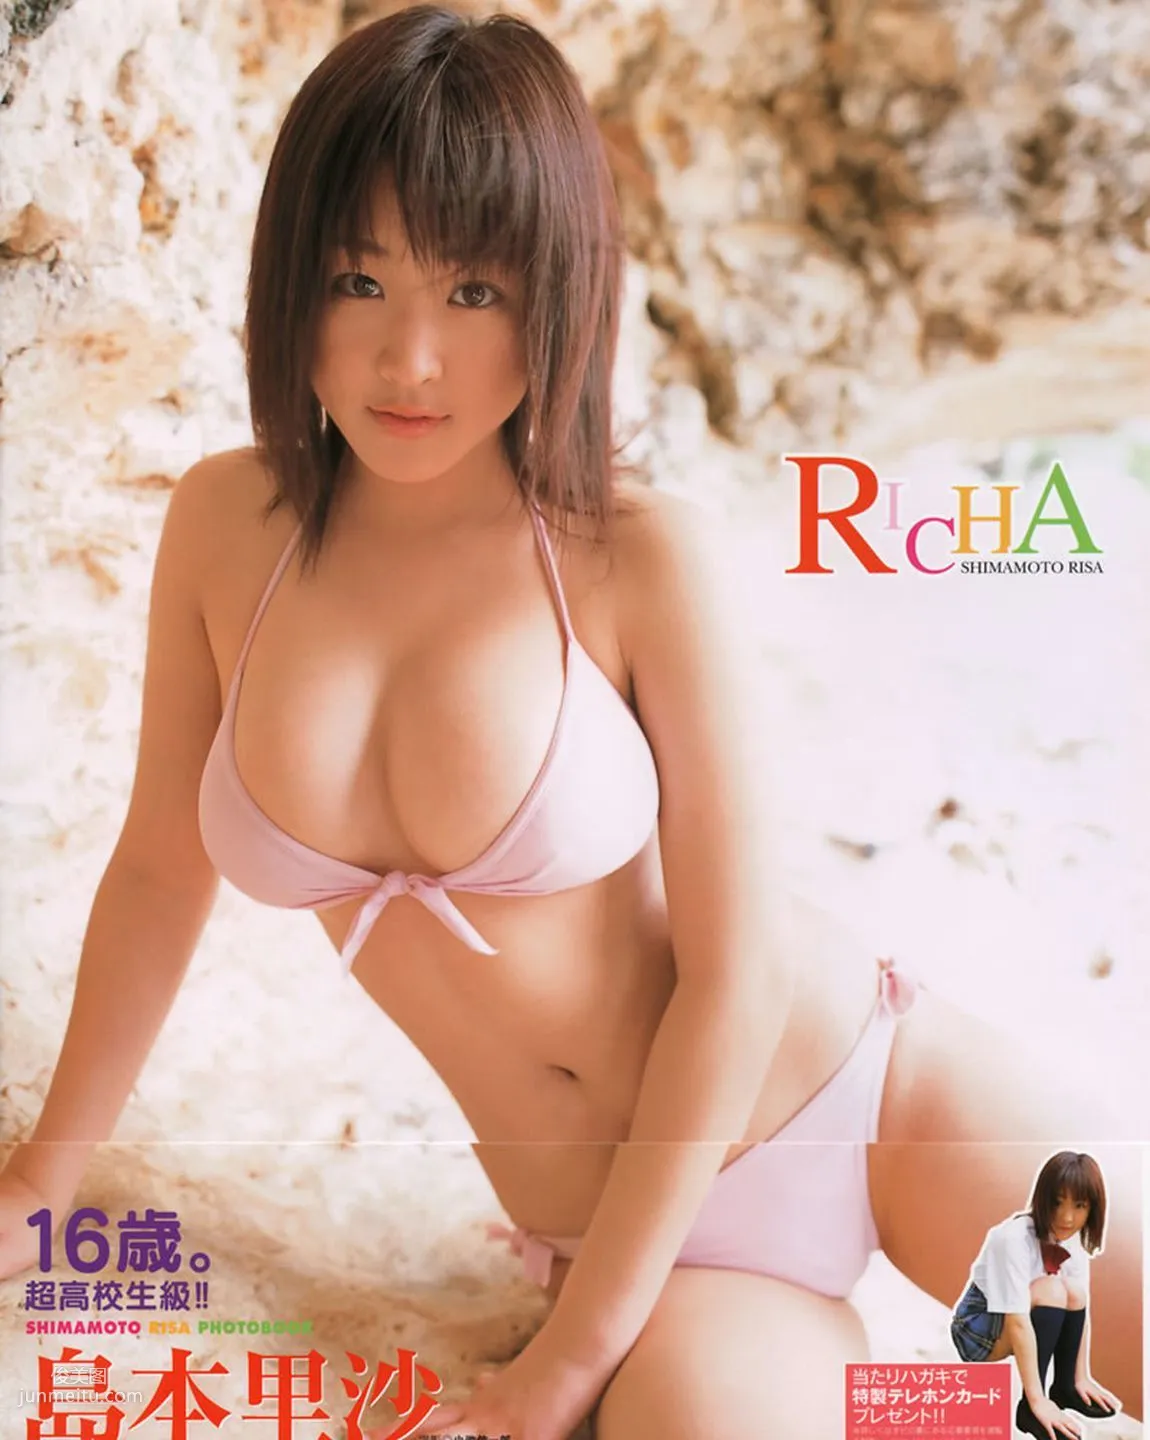 島本里沙《Richa》 [PhotoBook] 写真集1